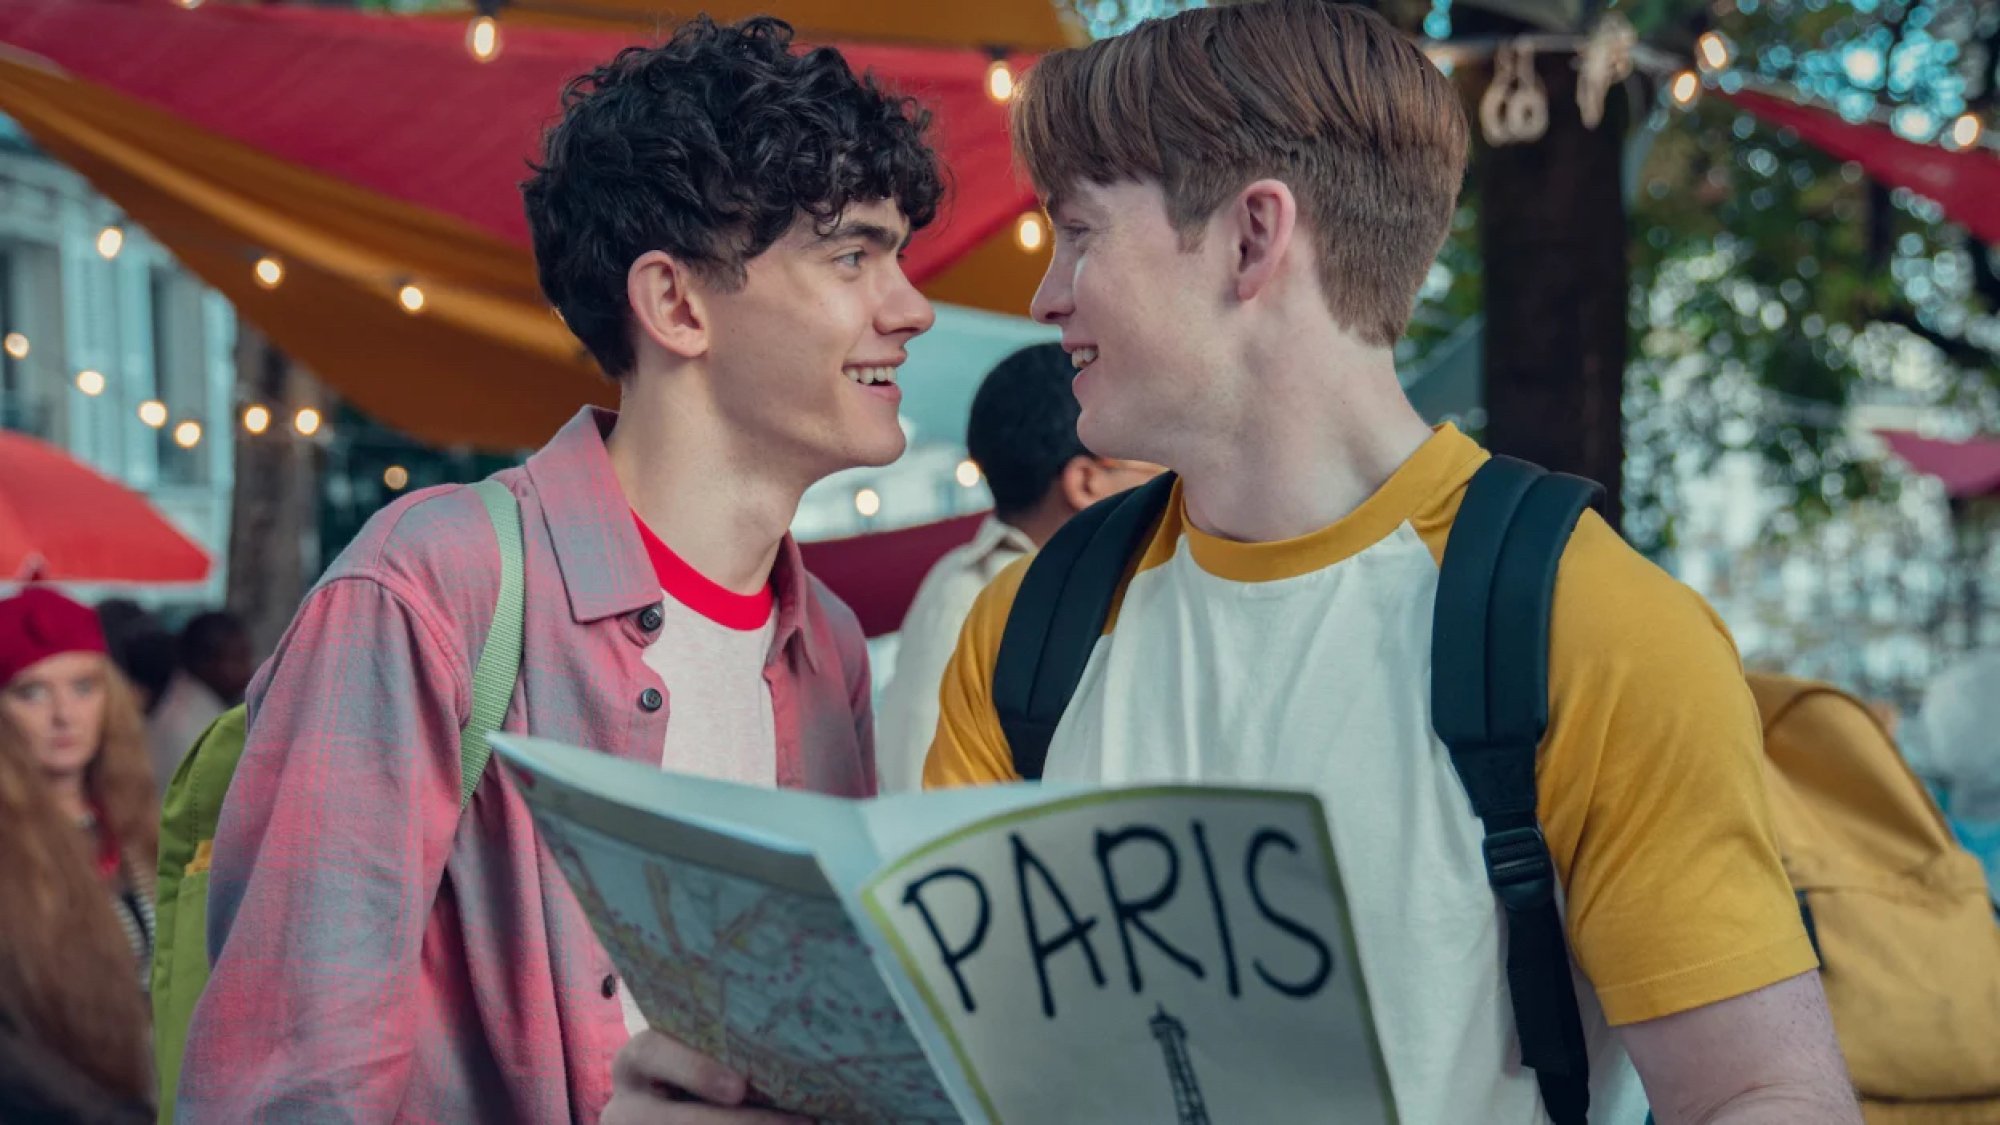 Deux adolescents se regardent amoureusement en tenant une brochure touristique sur Paris.